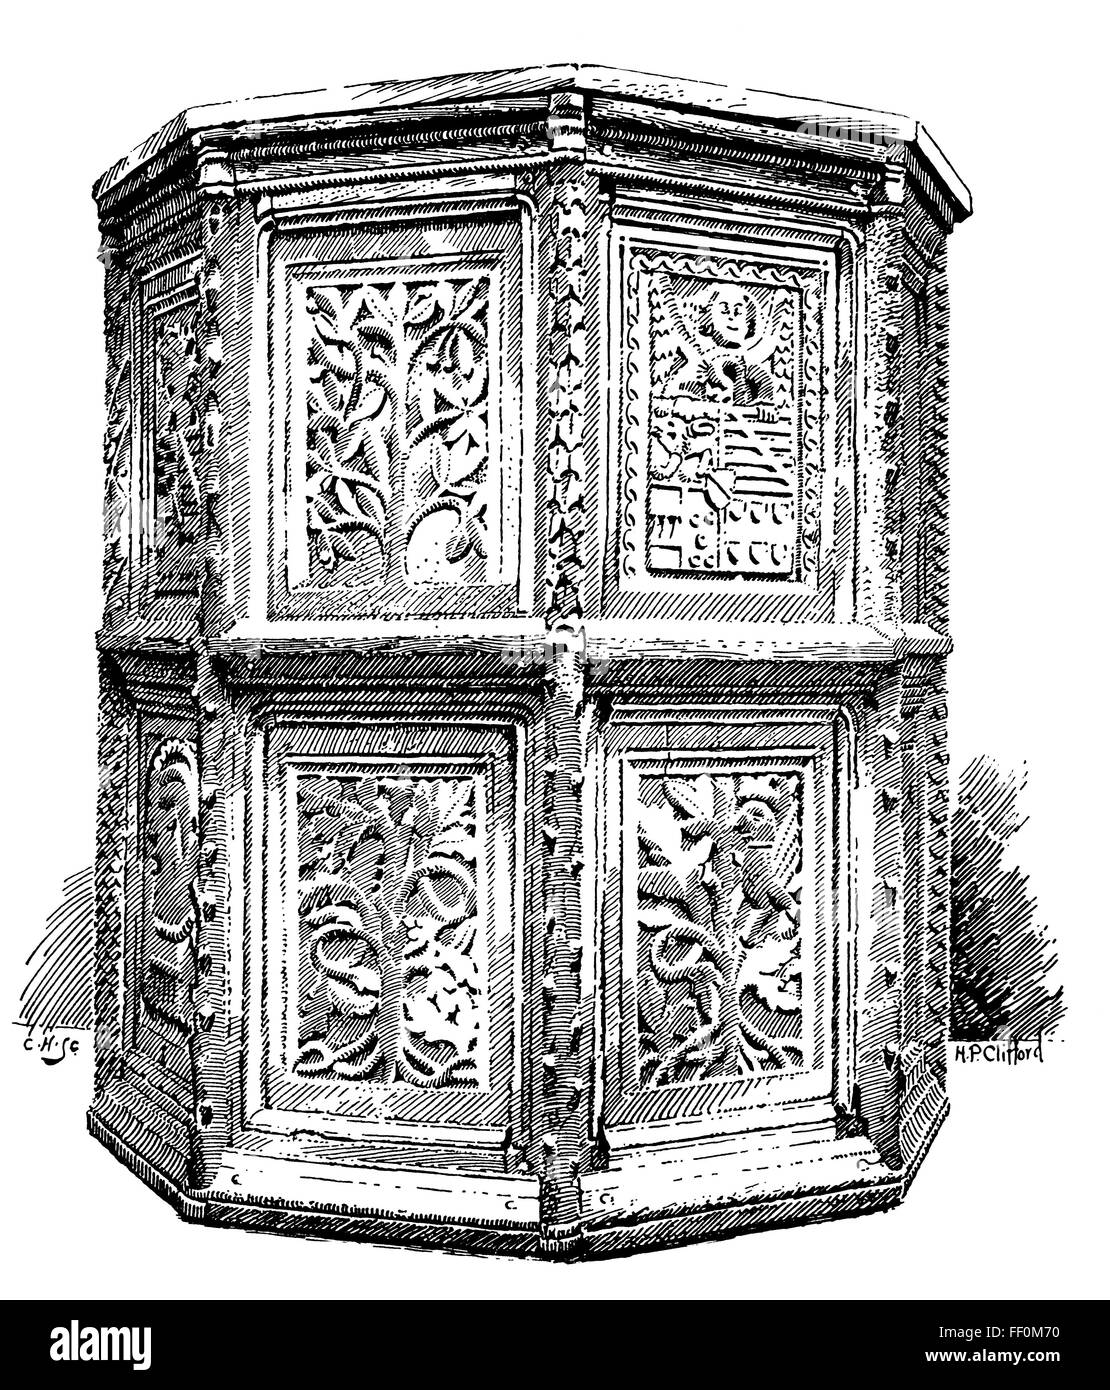 Scolpito del XIV secolo francese pulpito in legno, in V&un museo illustrazione dell'intaglio del legno da, H P Clifford, dal 1897 Studio Magazine Foto Stock